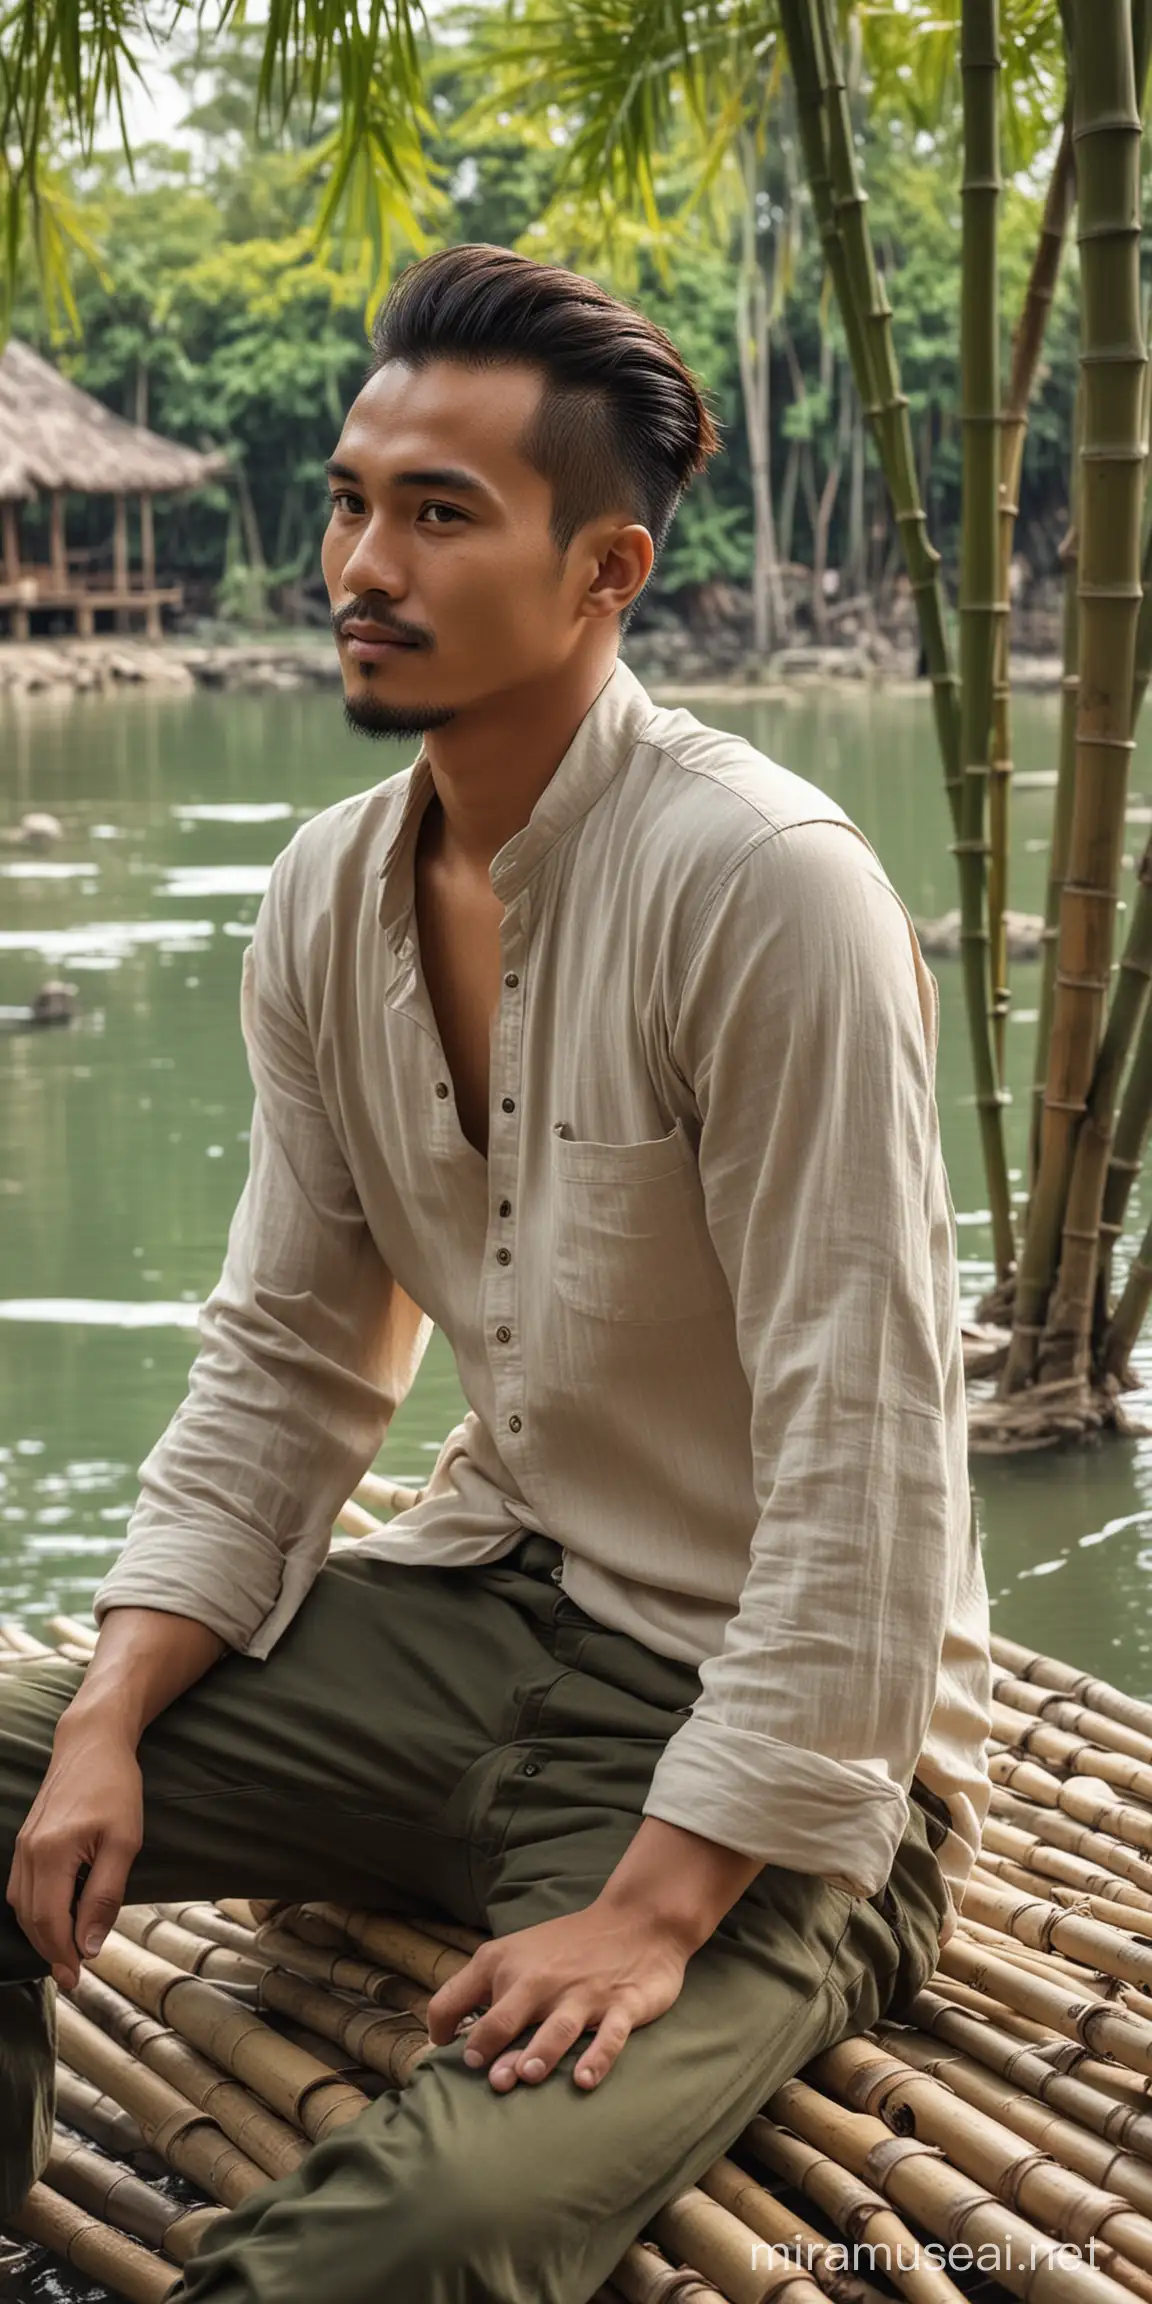 Seorang lelaki indonesia tampan usia 30 tahun dengan rambut di ikat kebelakang,sedang duduk di pondok bambu tepi danau.
Gambar asli seperti nyata ultra hd 8k